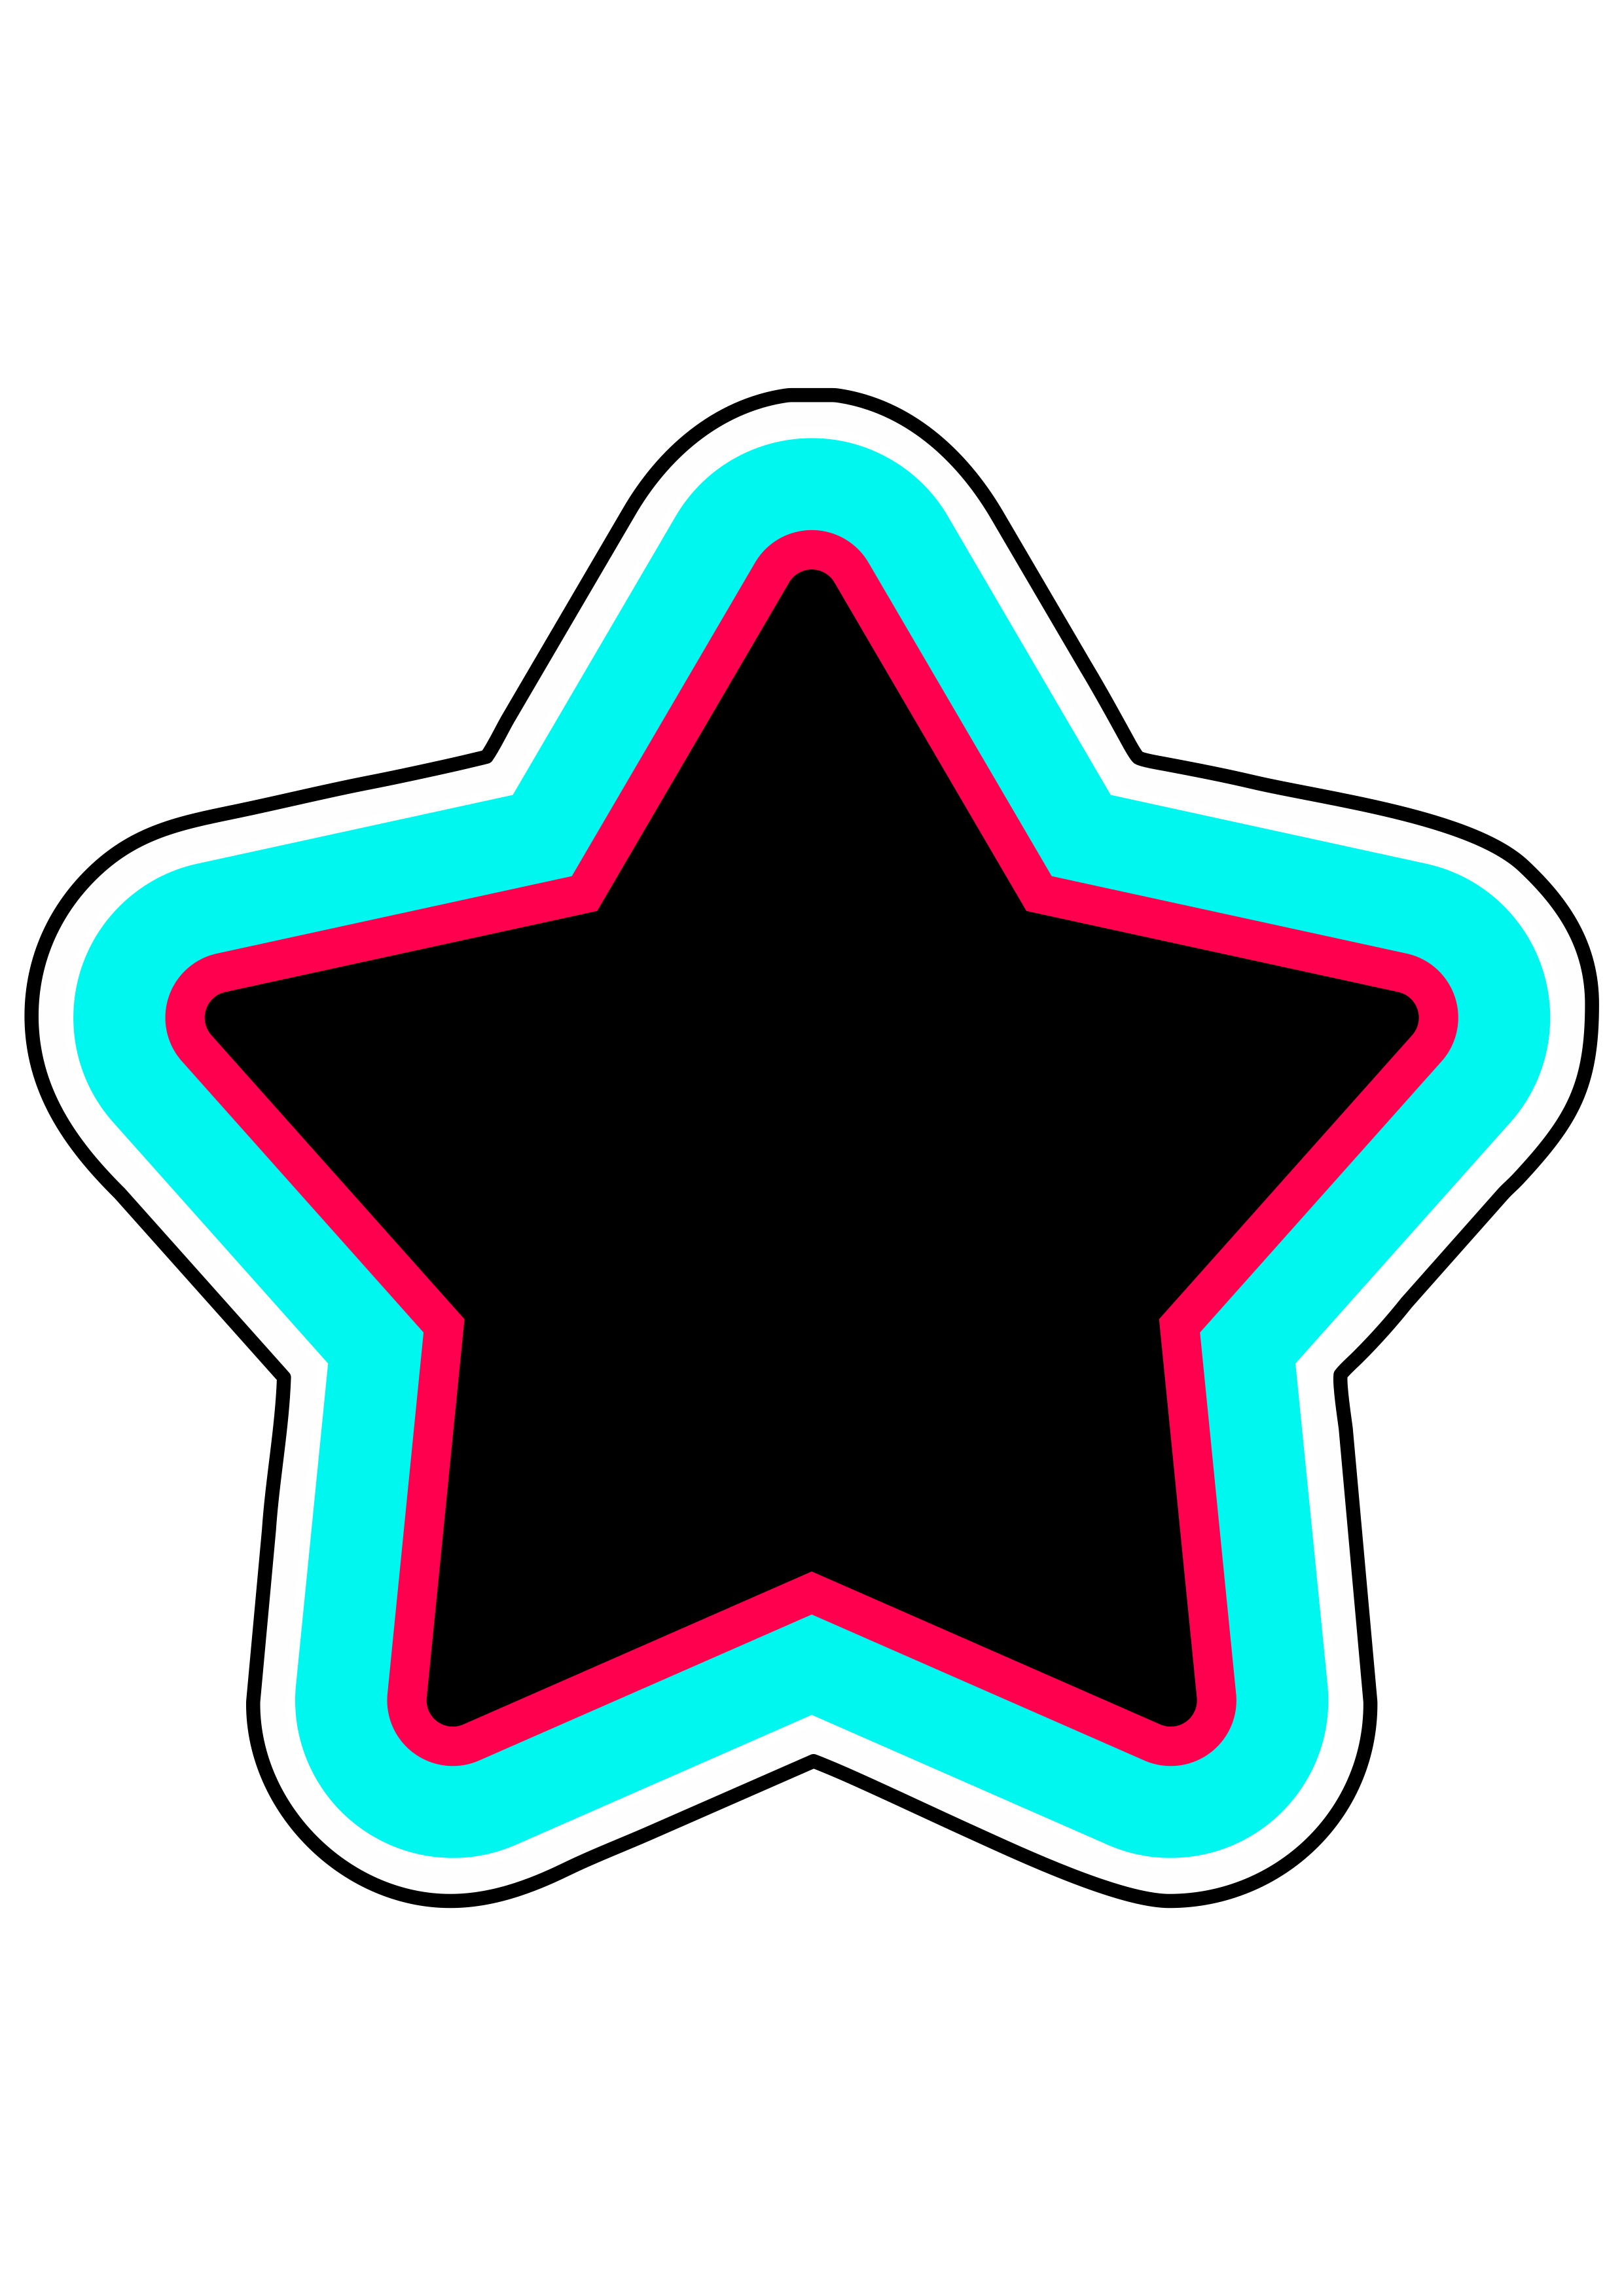 Tiktok simbolo logo aplicativo recorte contorno painel designer gráfico app de vídeos estrelinha png